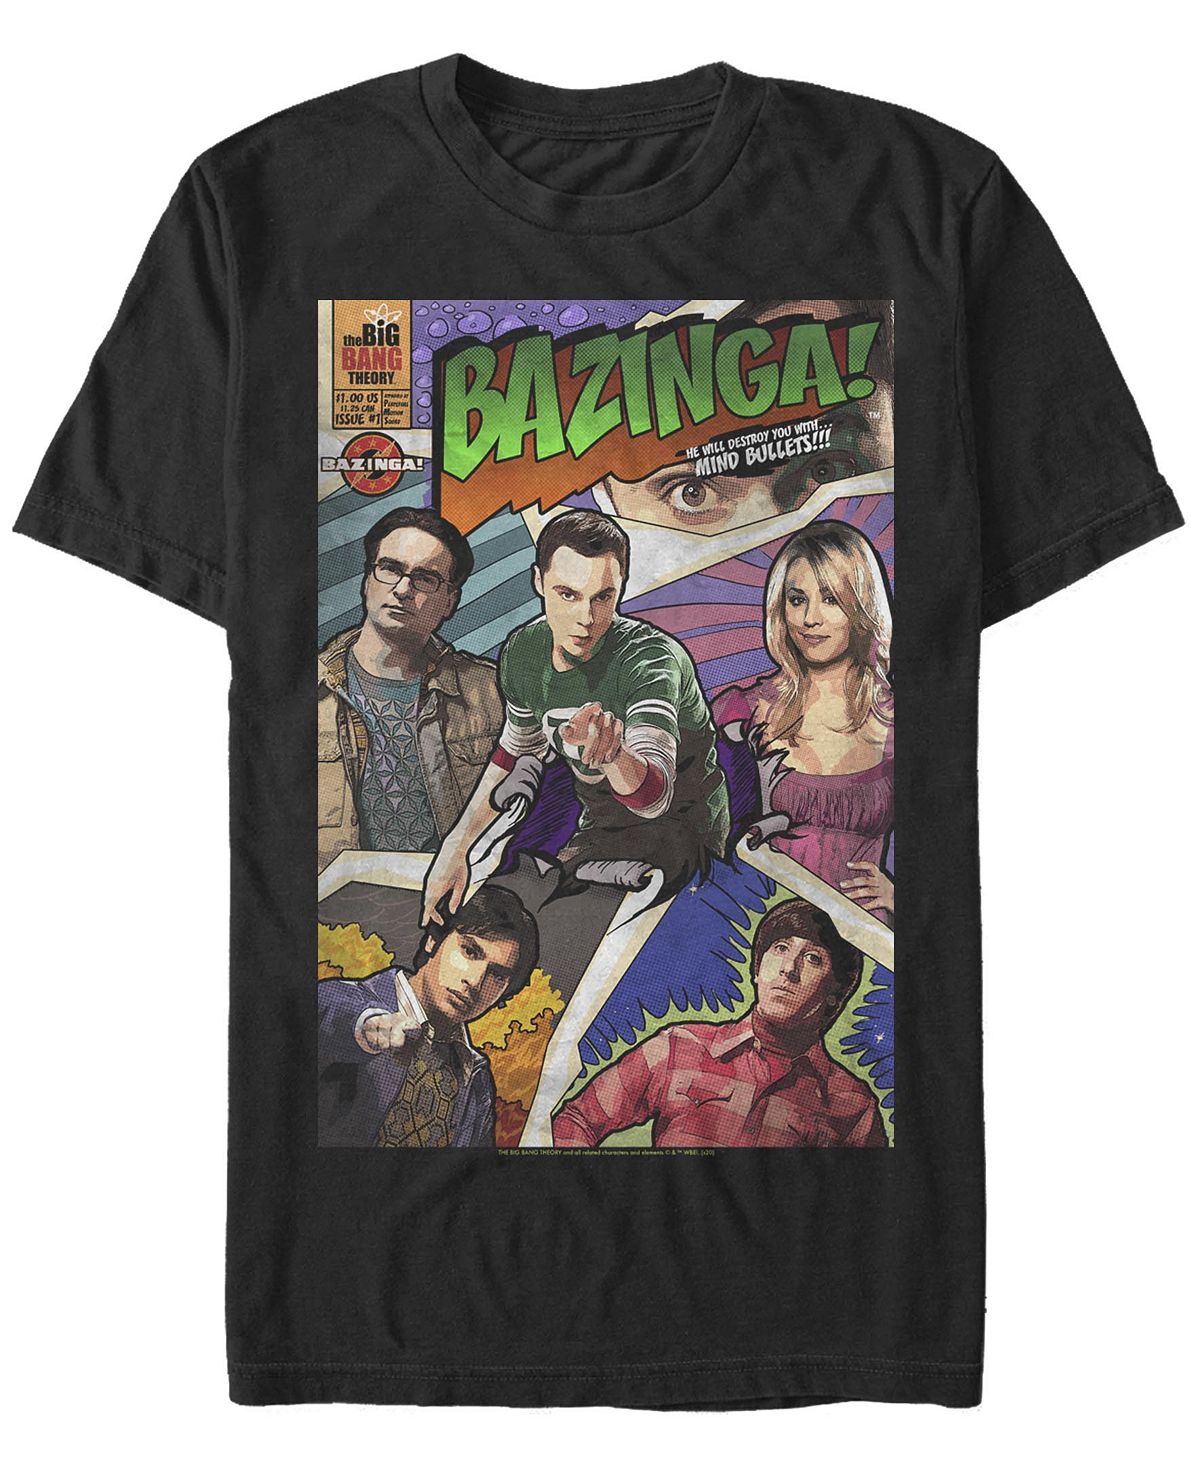 Мужская футболка с коротким рукавом с обложкой комикса bazinga the big bang theory Fifth Sun, черный